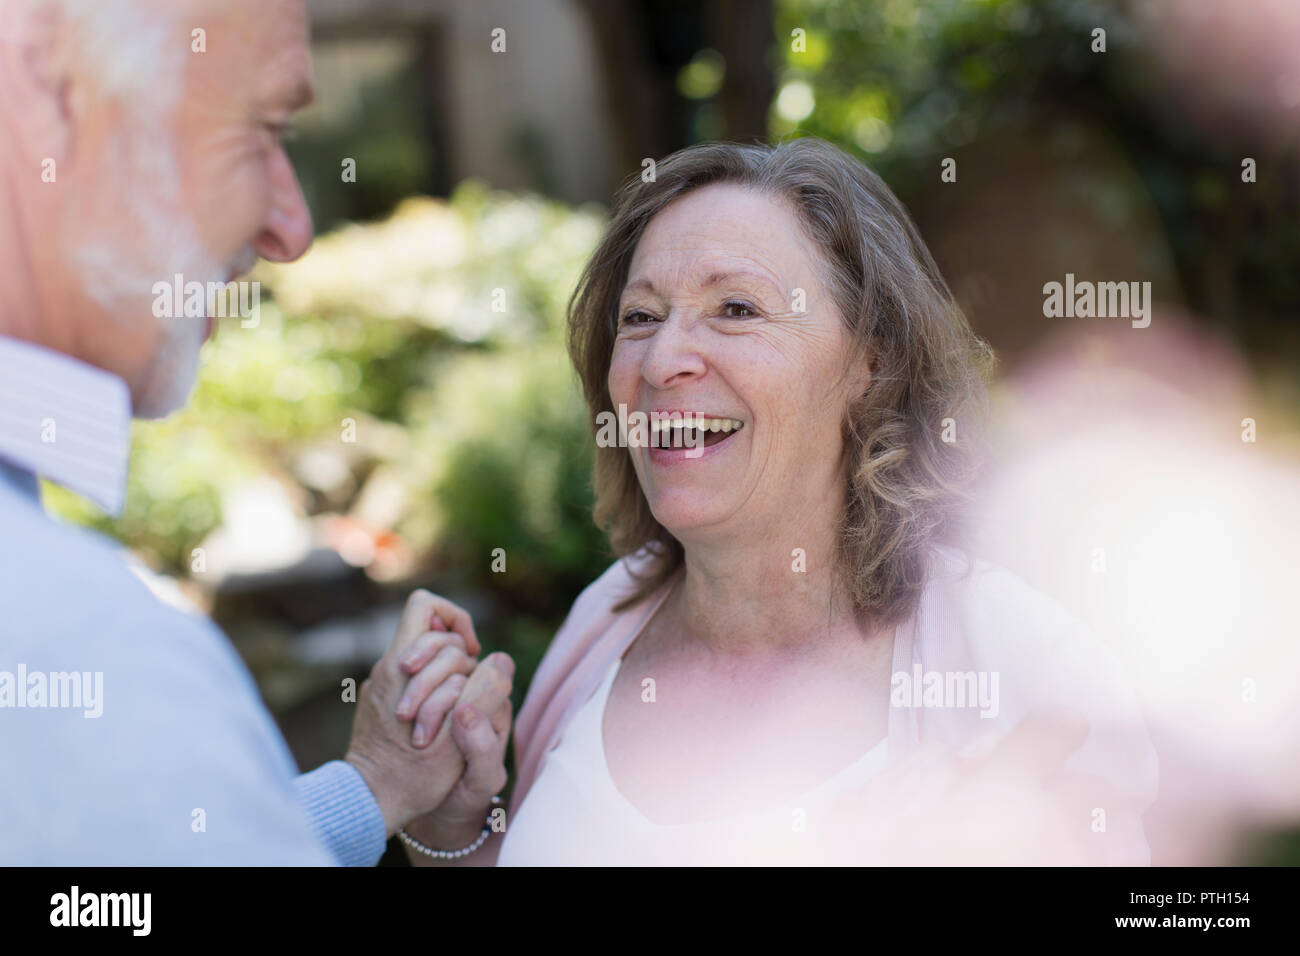 Heureux, affectueux senior couple in garden Banque D'Images